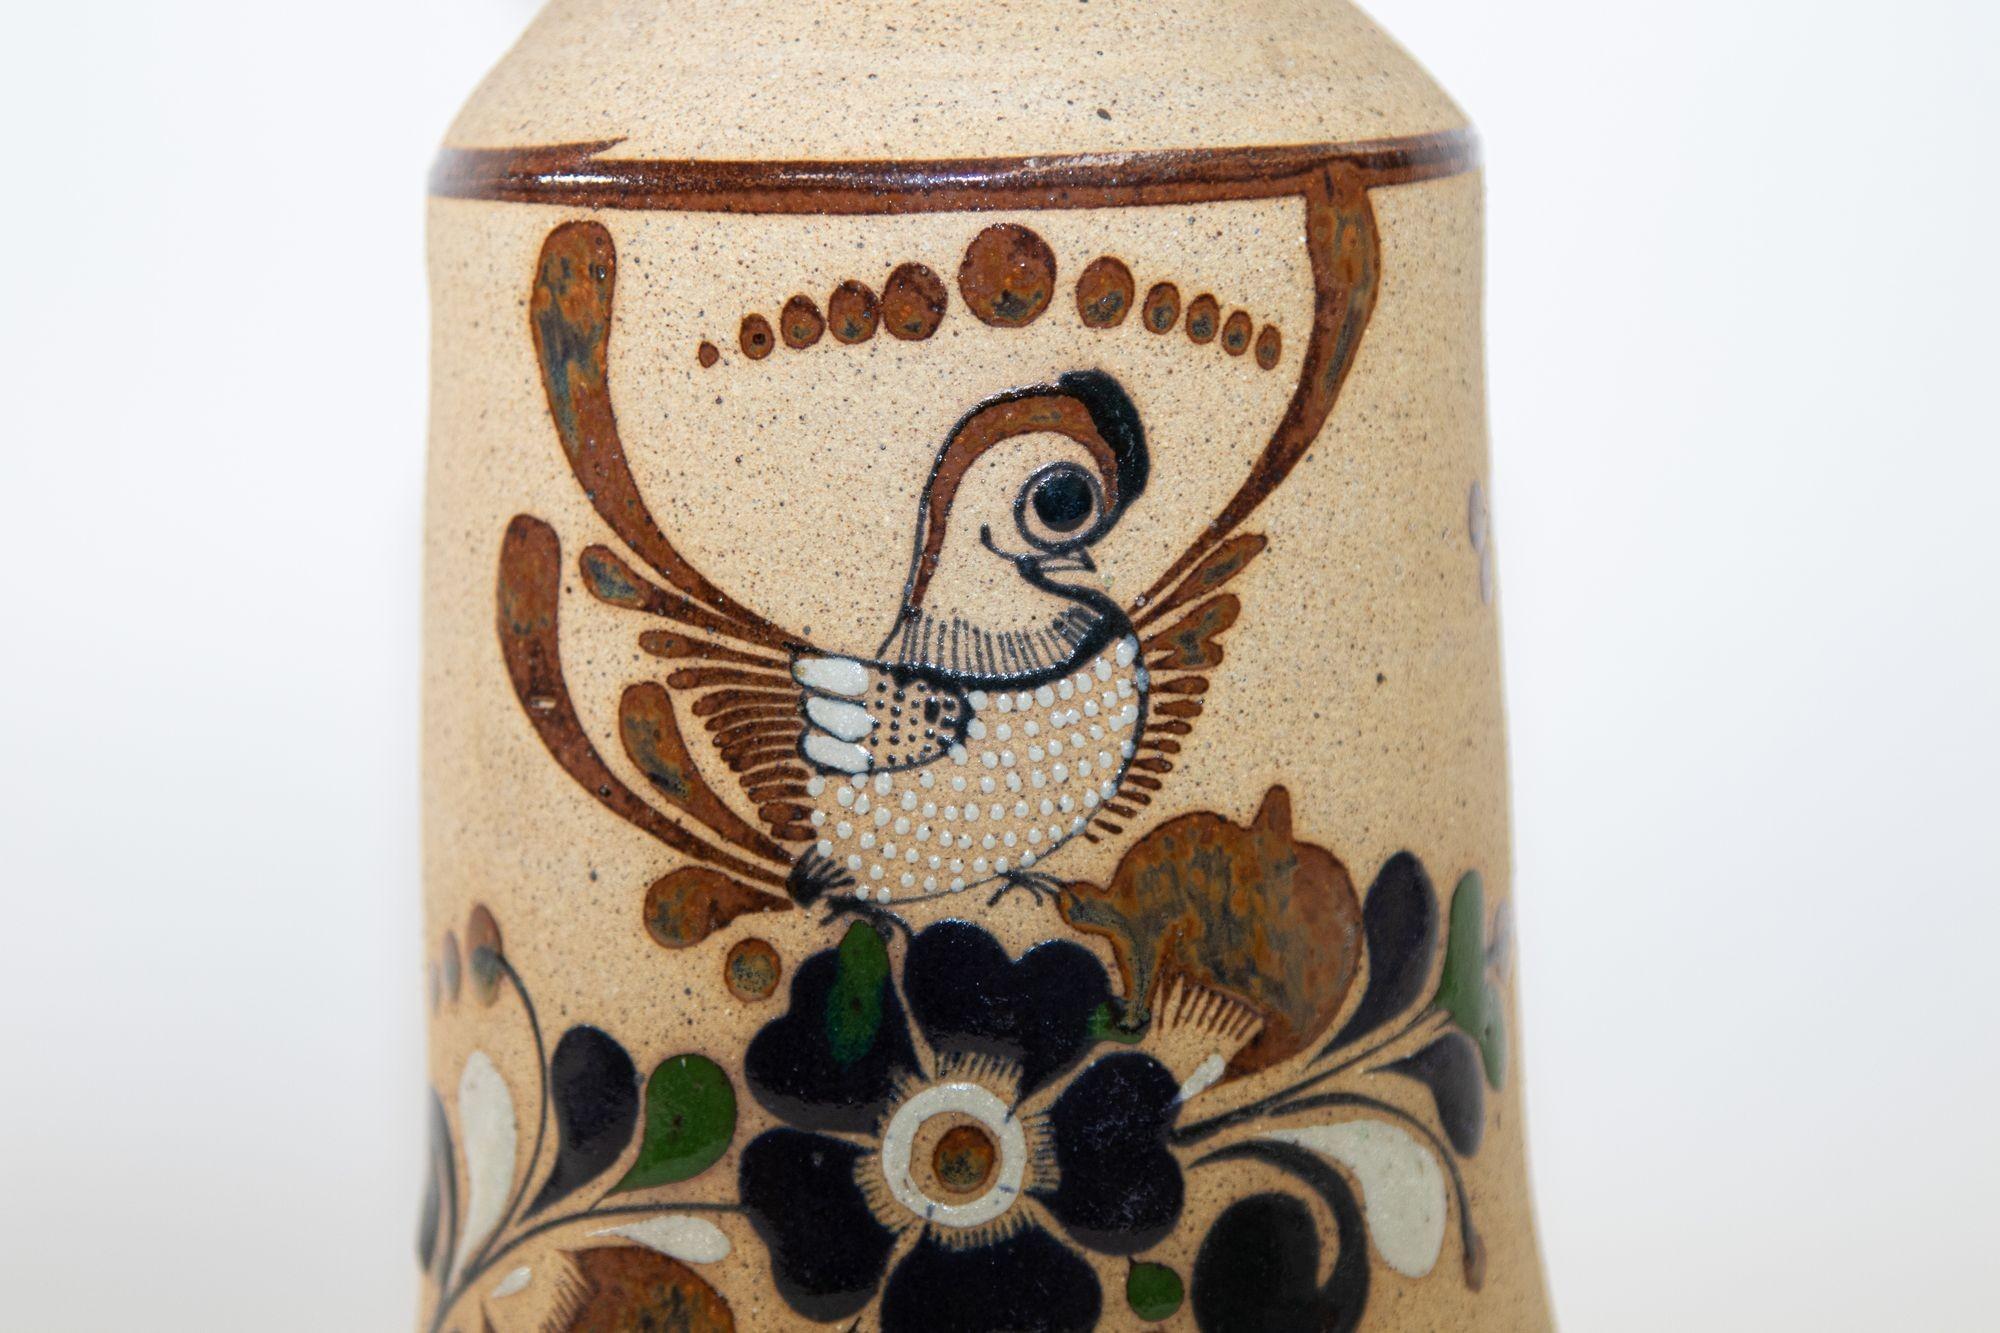 Grand vase en poterie de grès Tonala de style Folk Art, années 1960.
Grand vase en poterie de grès Folk Art Tonala avec oiseau et fleurs signé.
Vintage grand vase en grès texturé et peint à la main avec un oiseau abstrait et une décoration florale